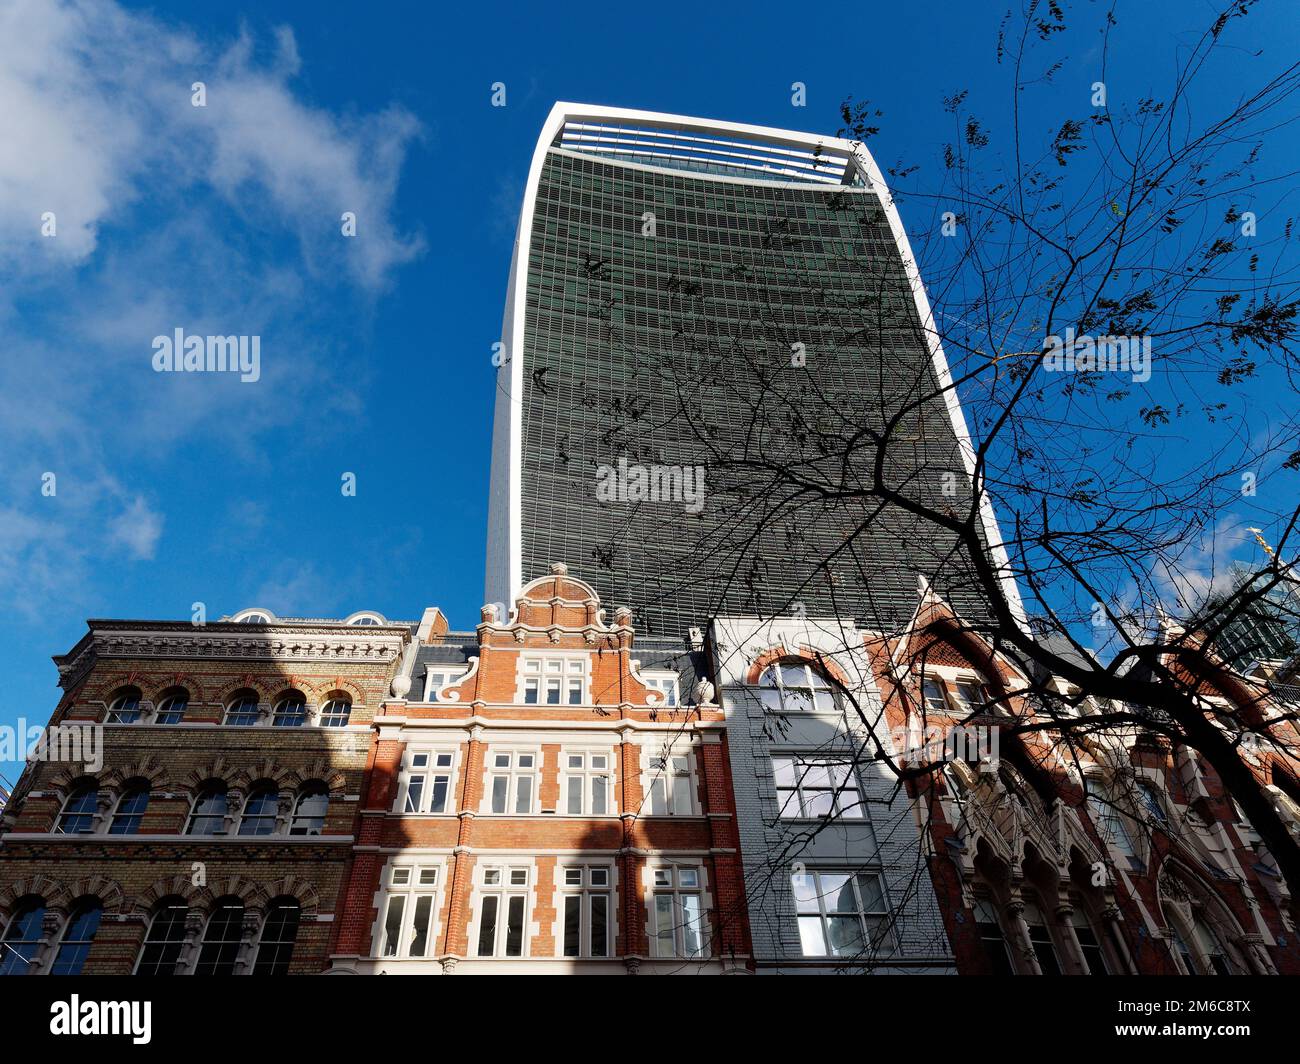 L'alto e moderno edificio conosciuto come il Walkie Talkie Skyscraper che ospita lo Sky Garden. Di seguito sono riportate proprietà storiche residenziali. Londra, Inghilterra Foto Stock